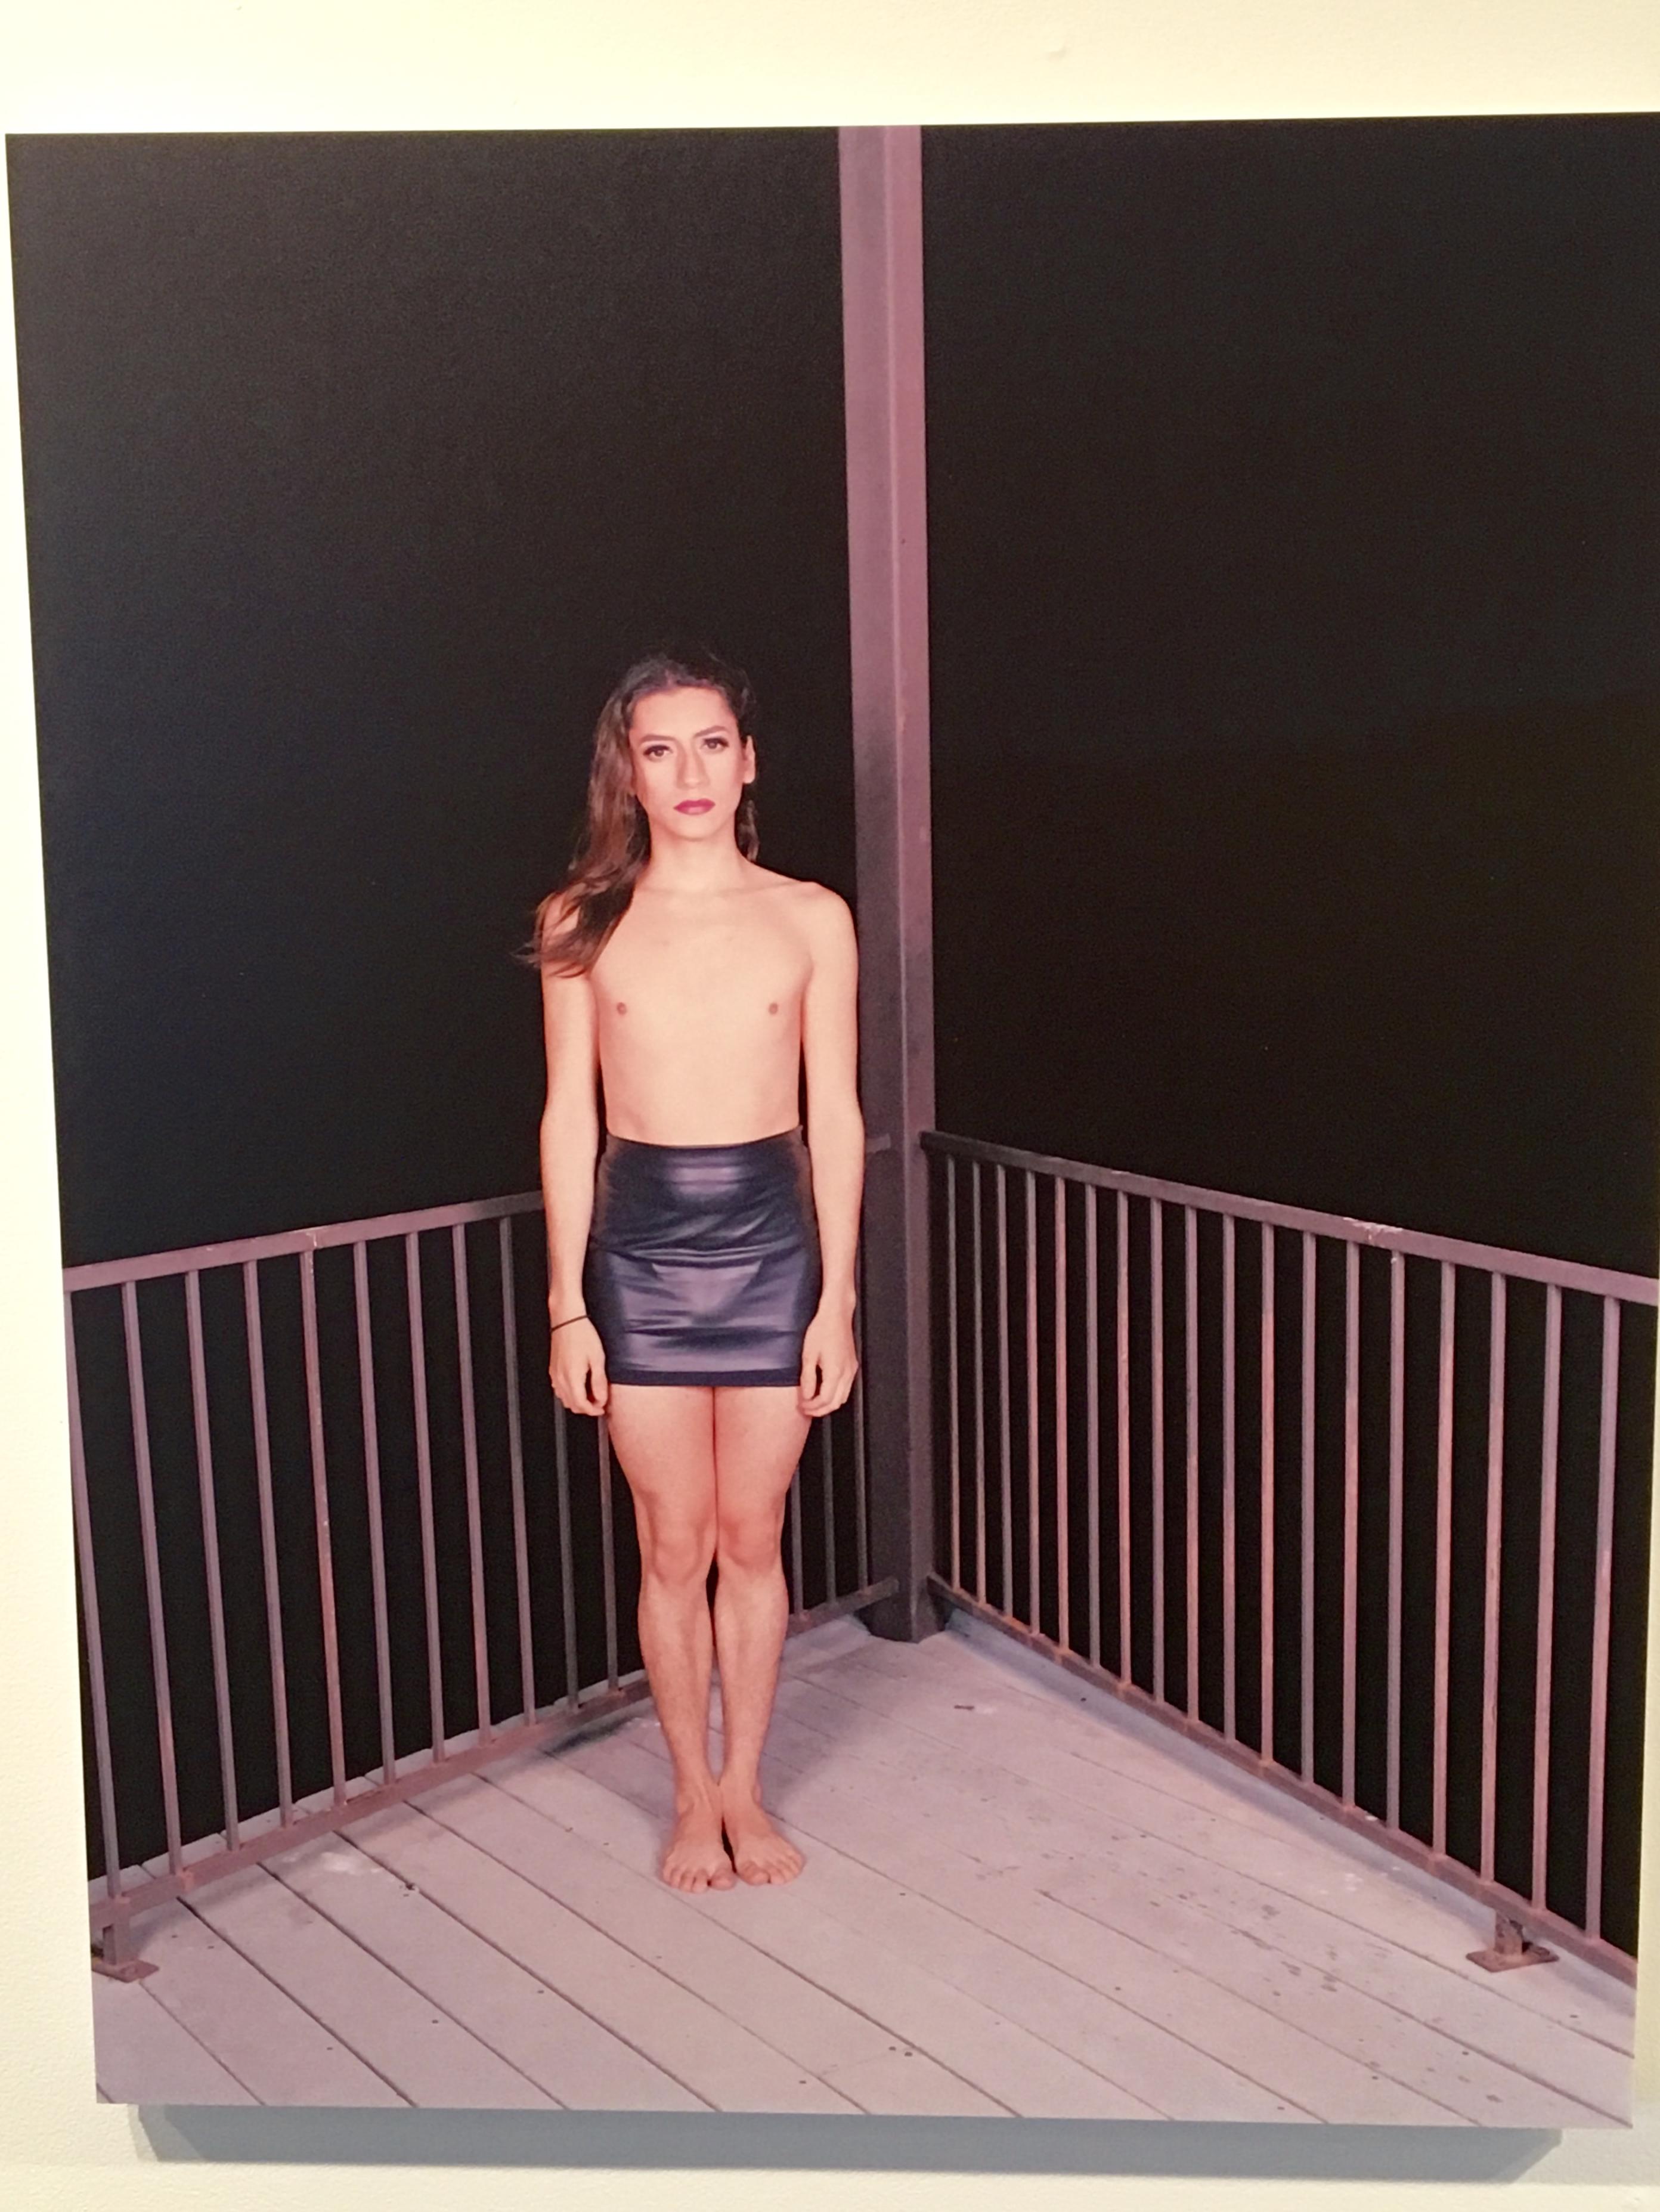 Evelyn Pustka, Androgyny by the Lake, 2015. Kodak portrait film, inkjet print, 28 3/4 x 23 in.